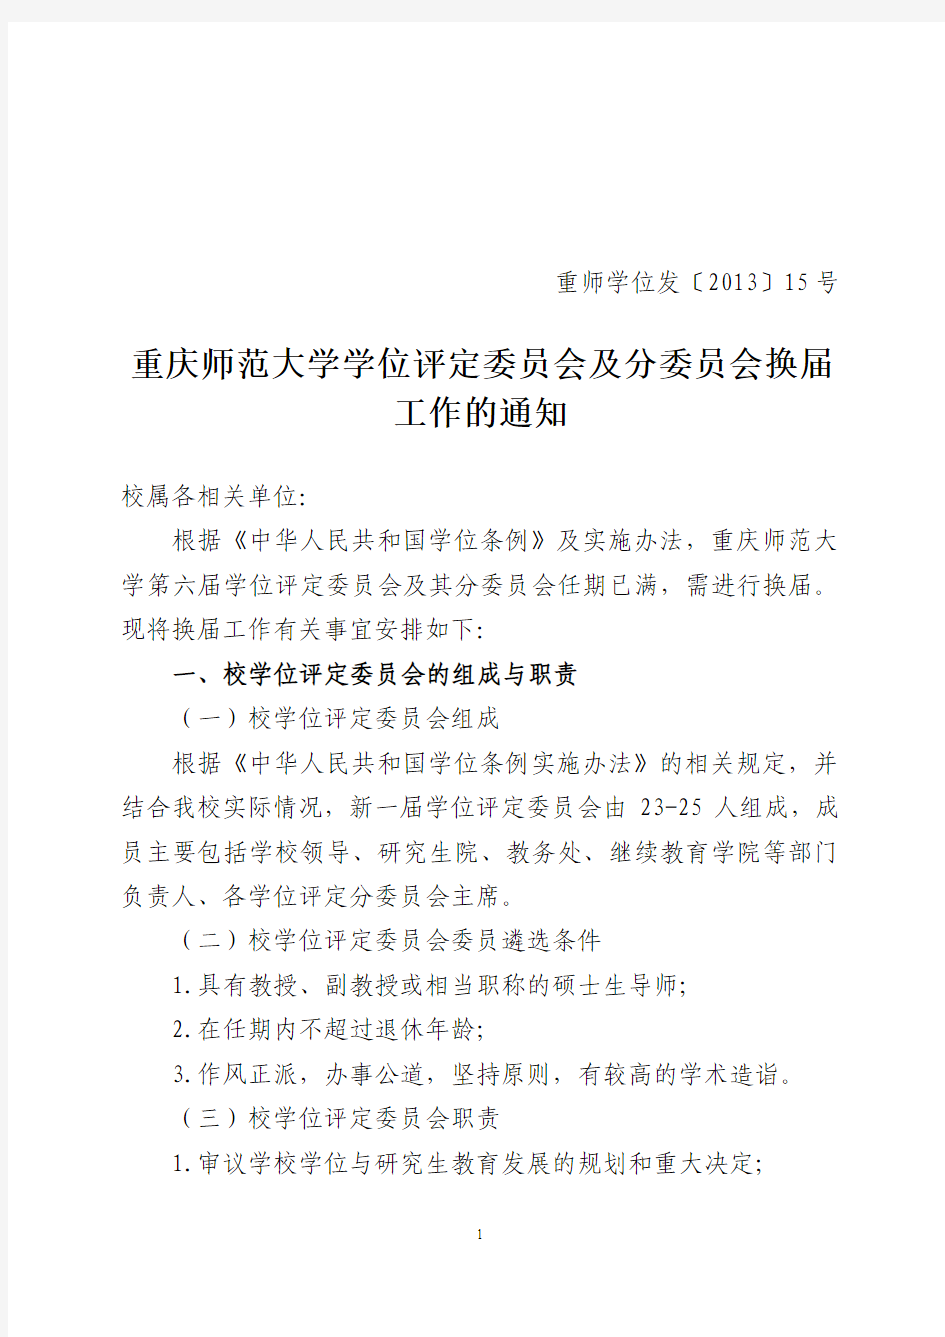 重庆师范大学学位评定委员会及分委员会换届工作的通知